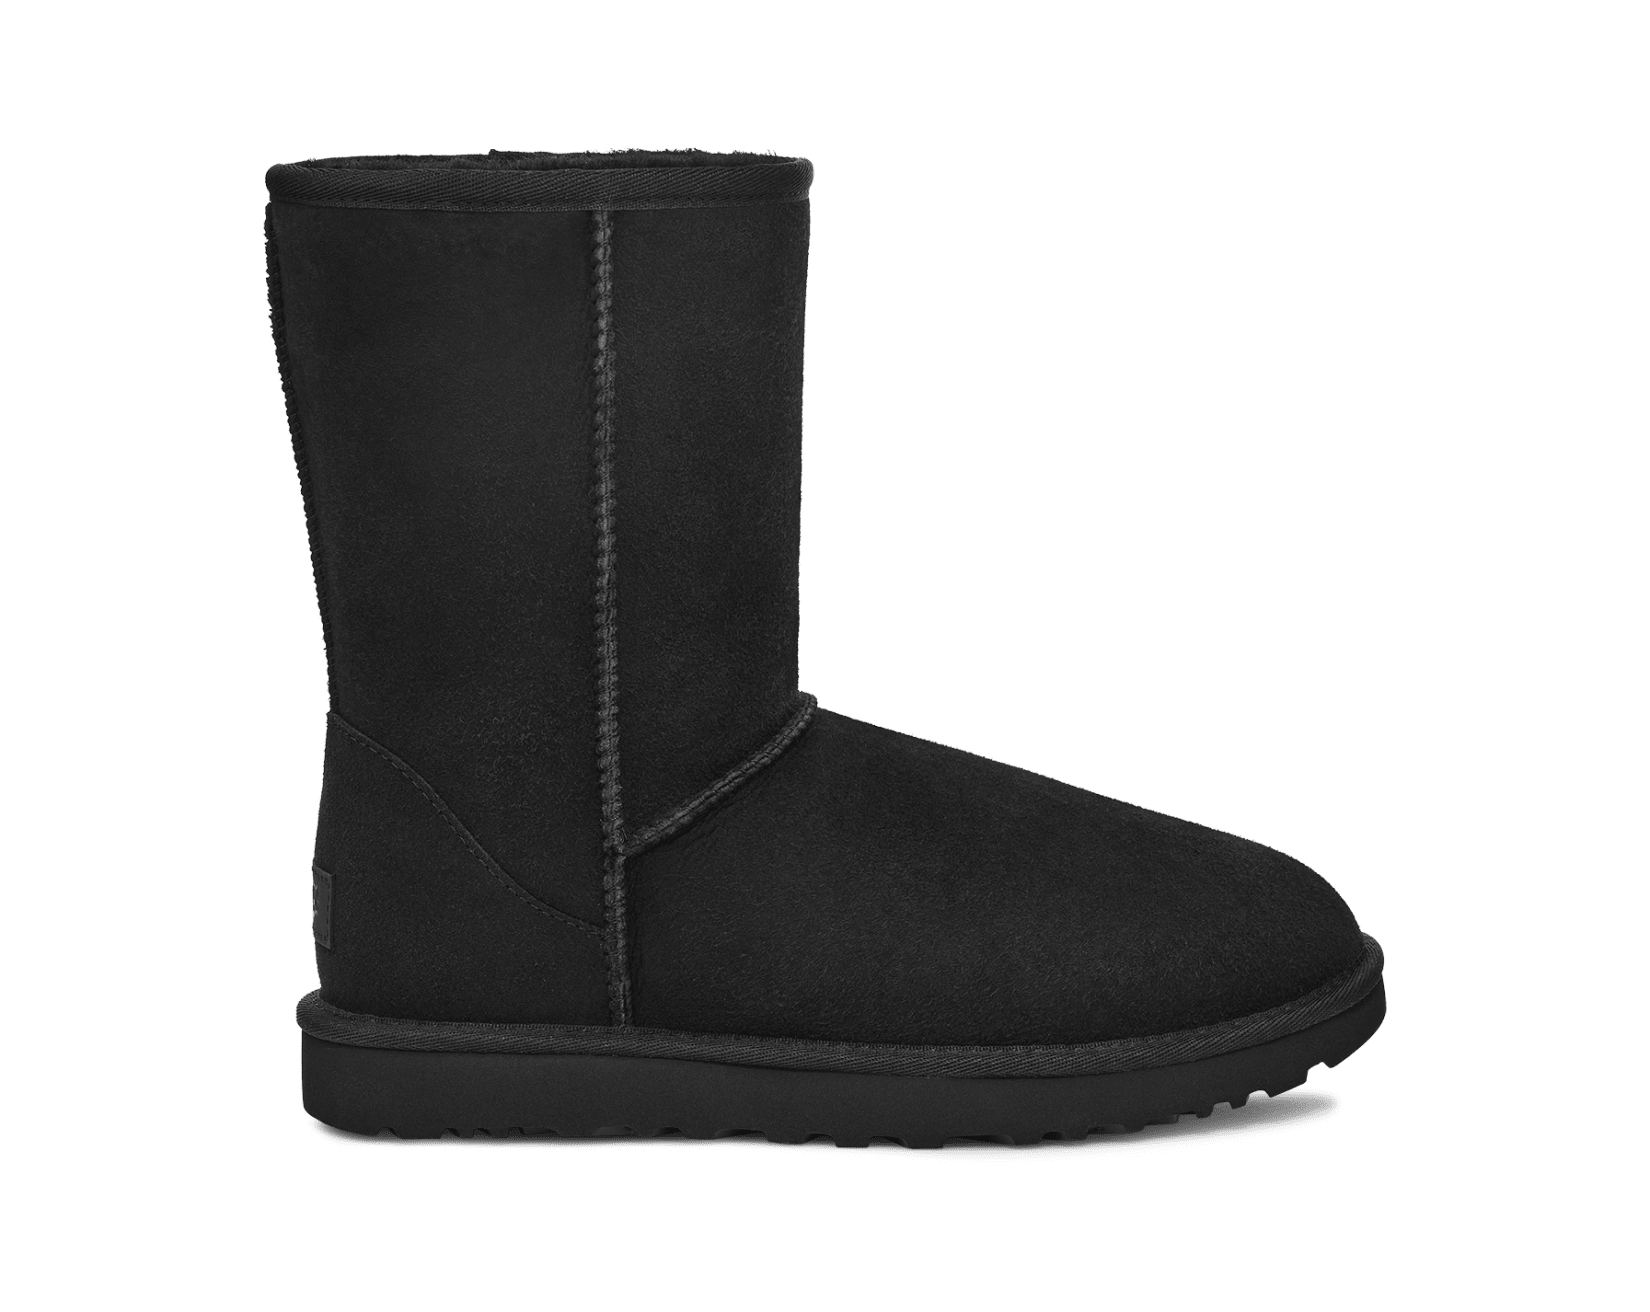 BA&SH Paris Cidie Womens Boots Black size 39